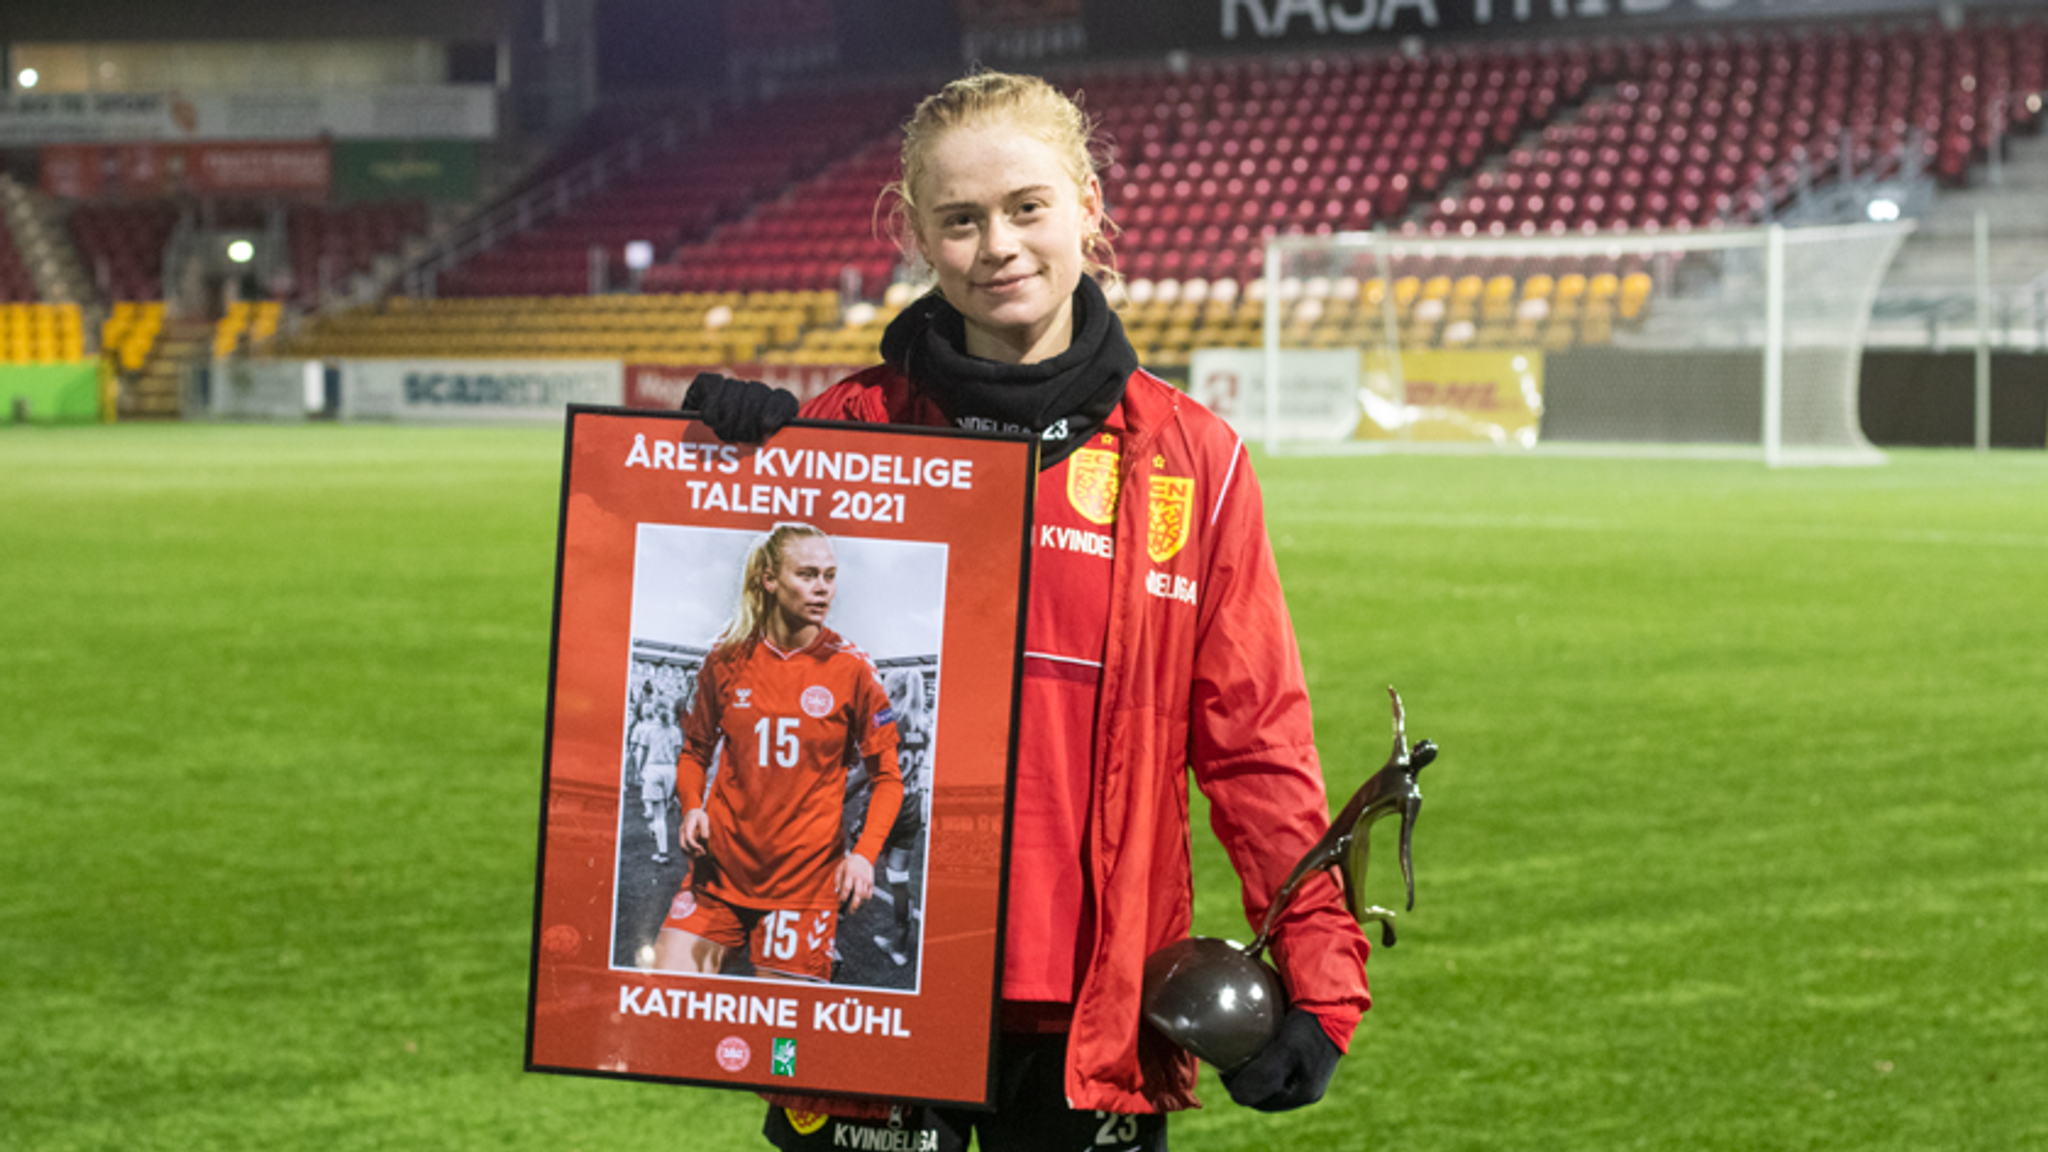  18-årige Kathrine Kühl er Årets Kvindelige Talent 2021